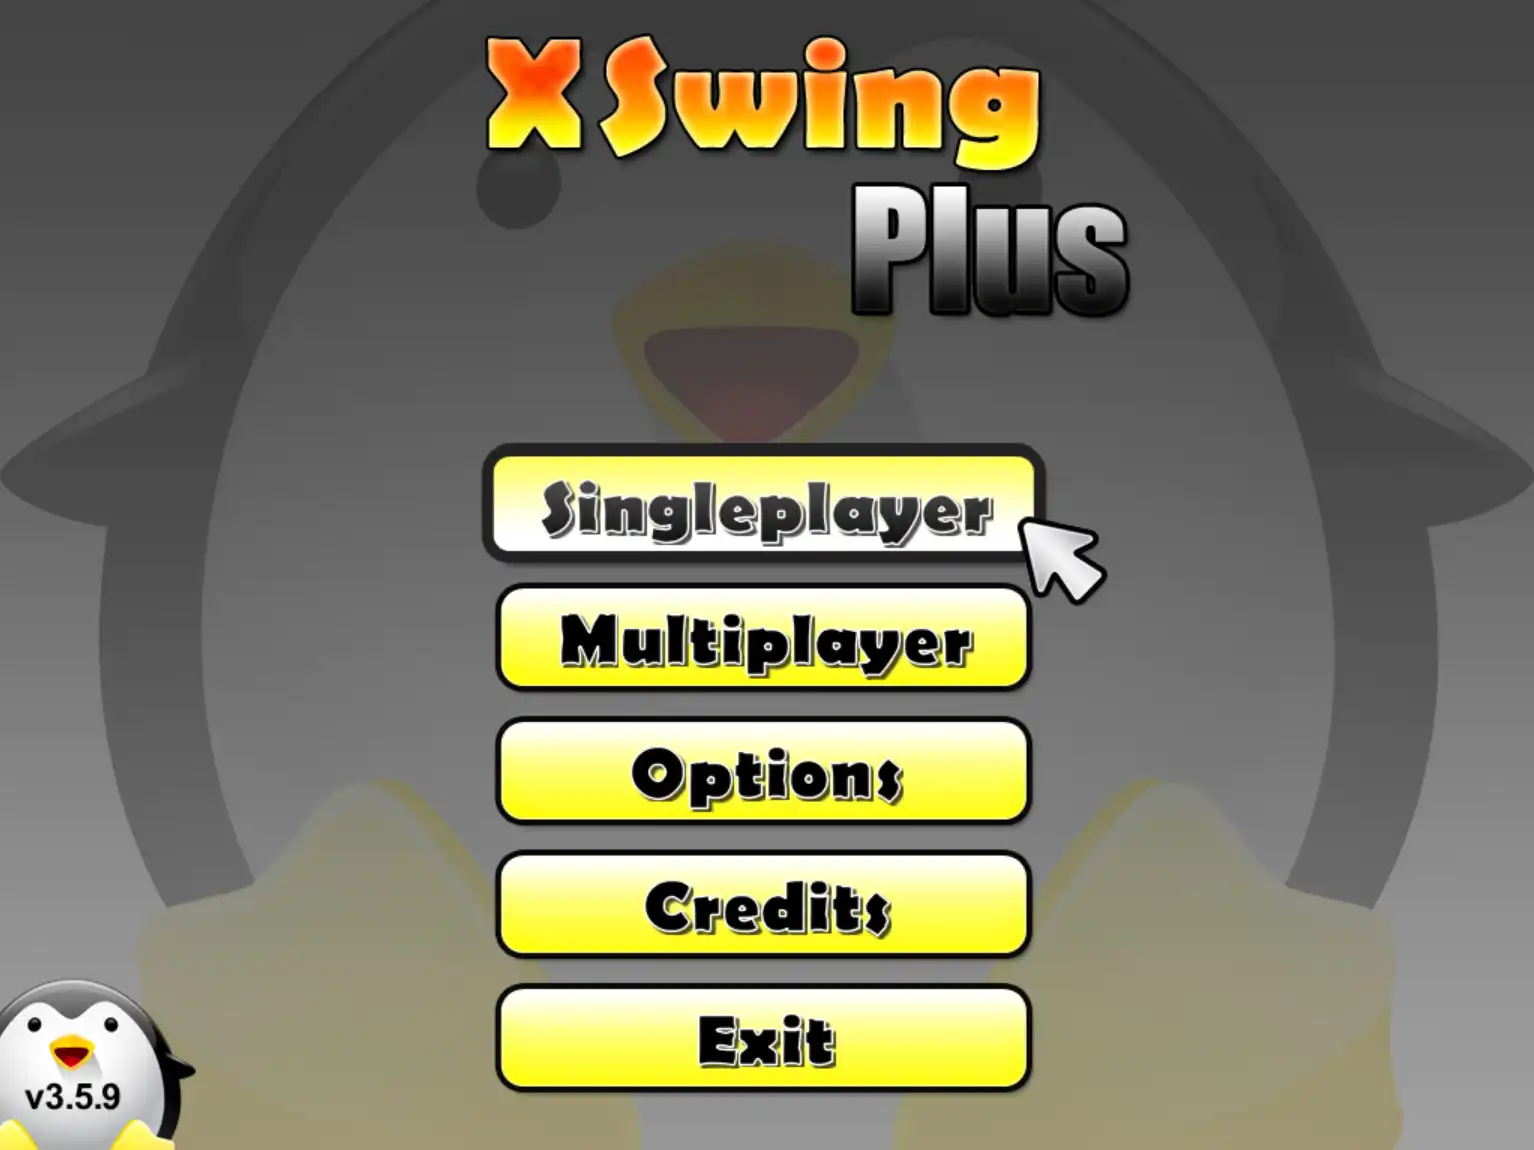 قم بتنزيل أداة الويب أو تطبيق الويب XSwing Plus